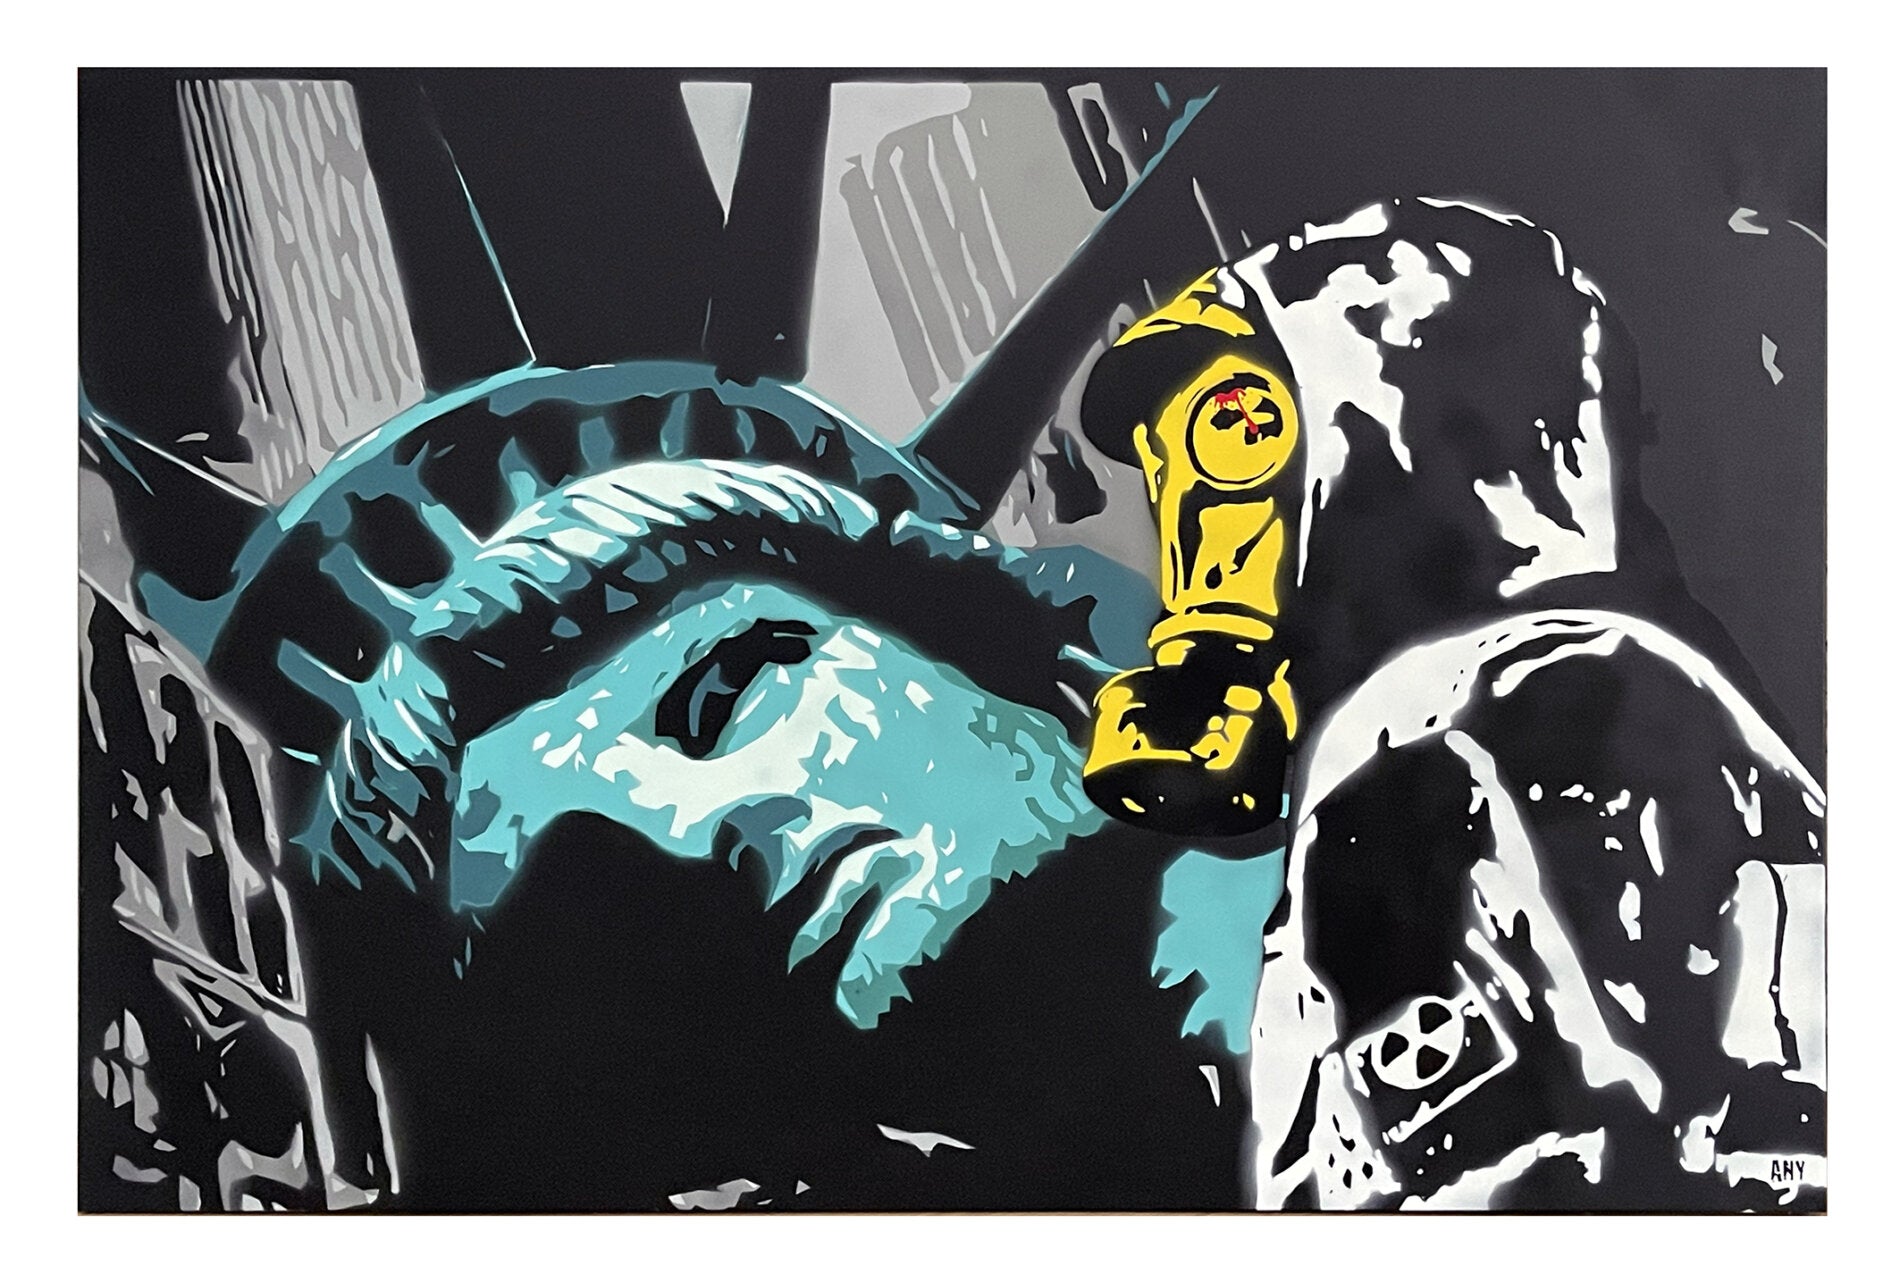 This Is The End di Any. Opera unica spray e stencil su tela rappresentante connessioni allo scenario di New York, come ricorda l'acronimo presente nel nome dell'artista "About New York" | Cd Studio d'Arte